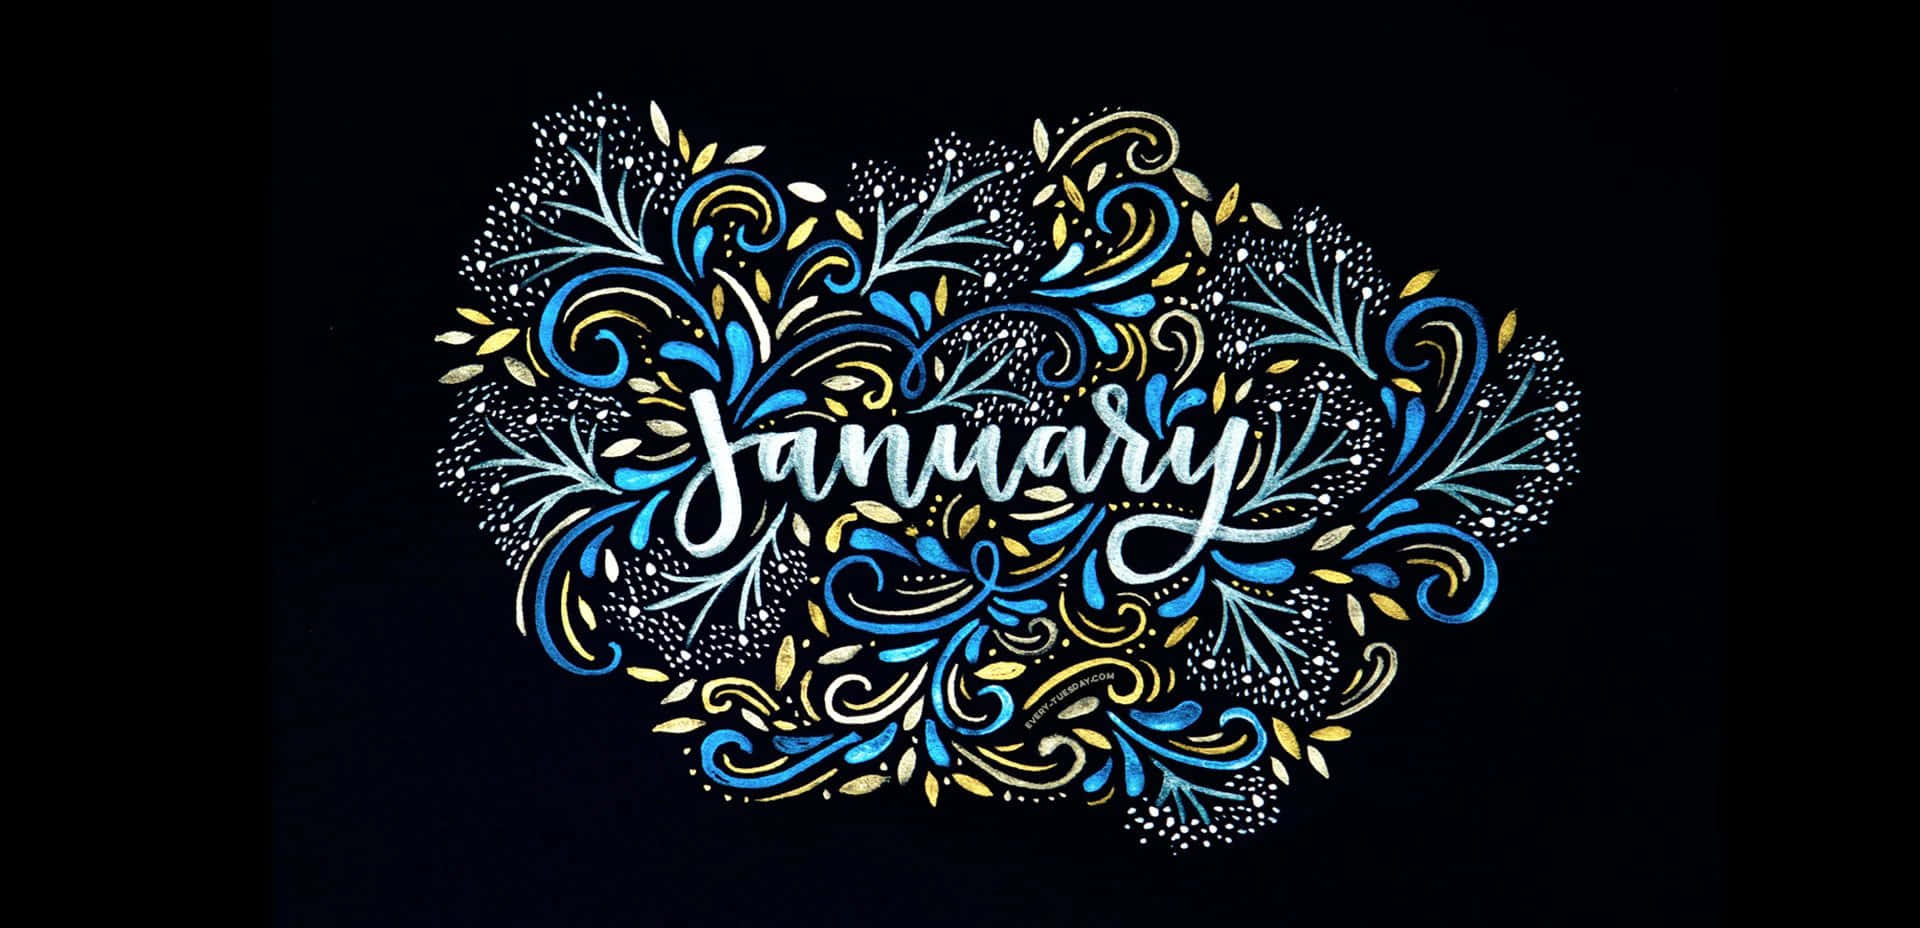 Velkommen til det nye år med denne søde januar scene! Wallpaper